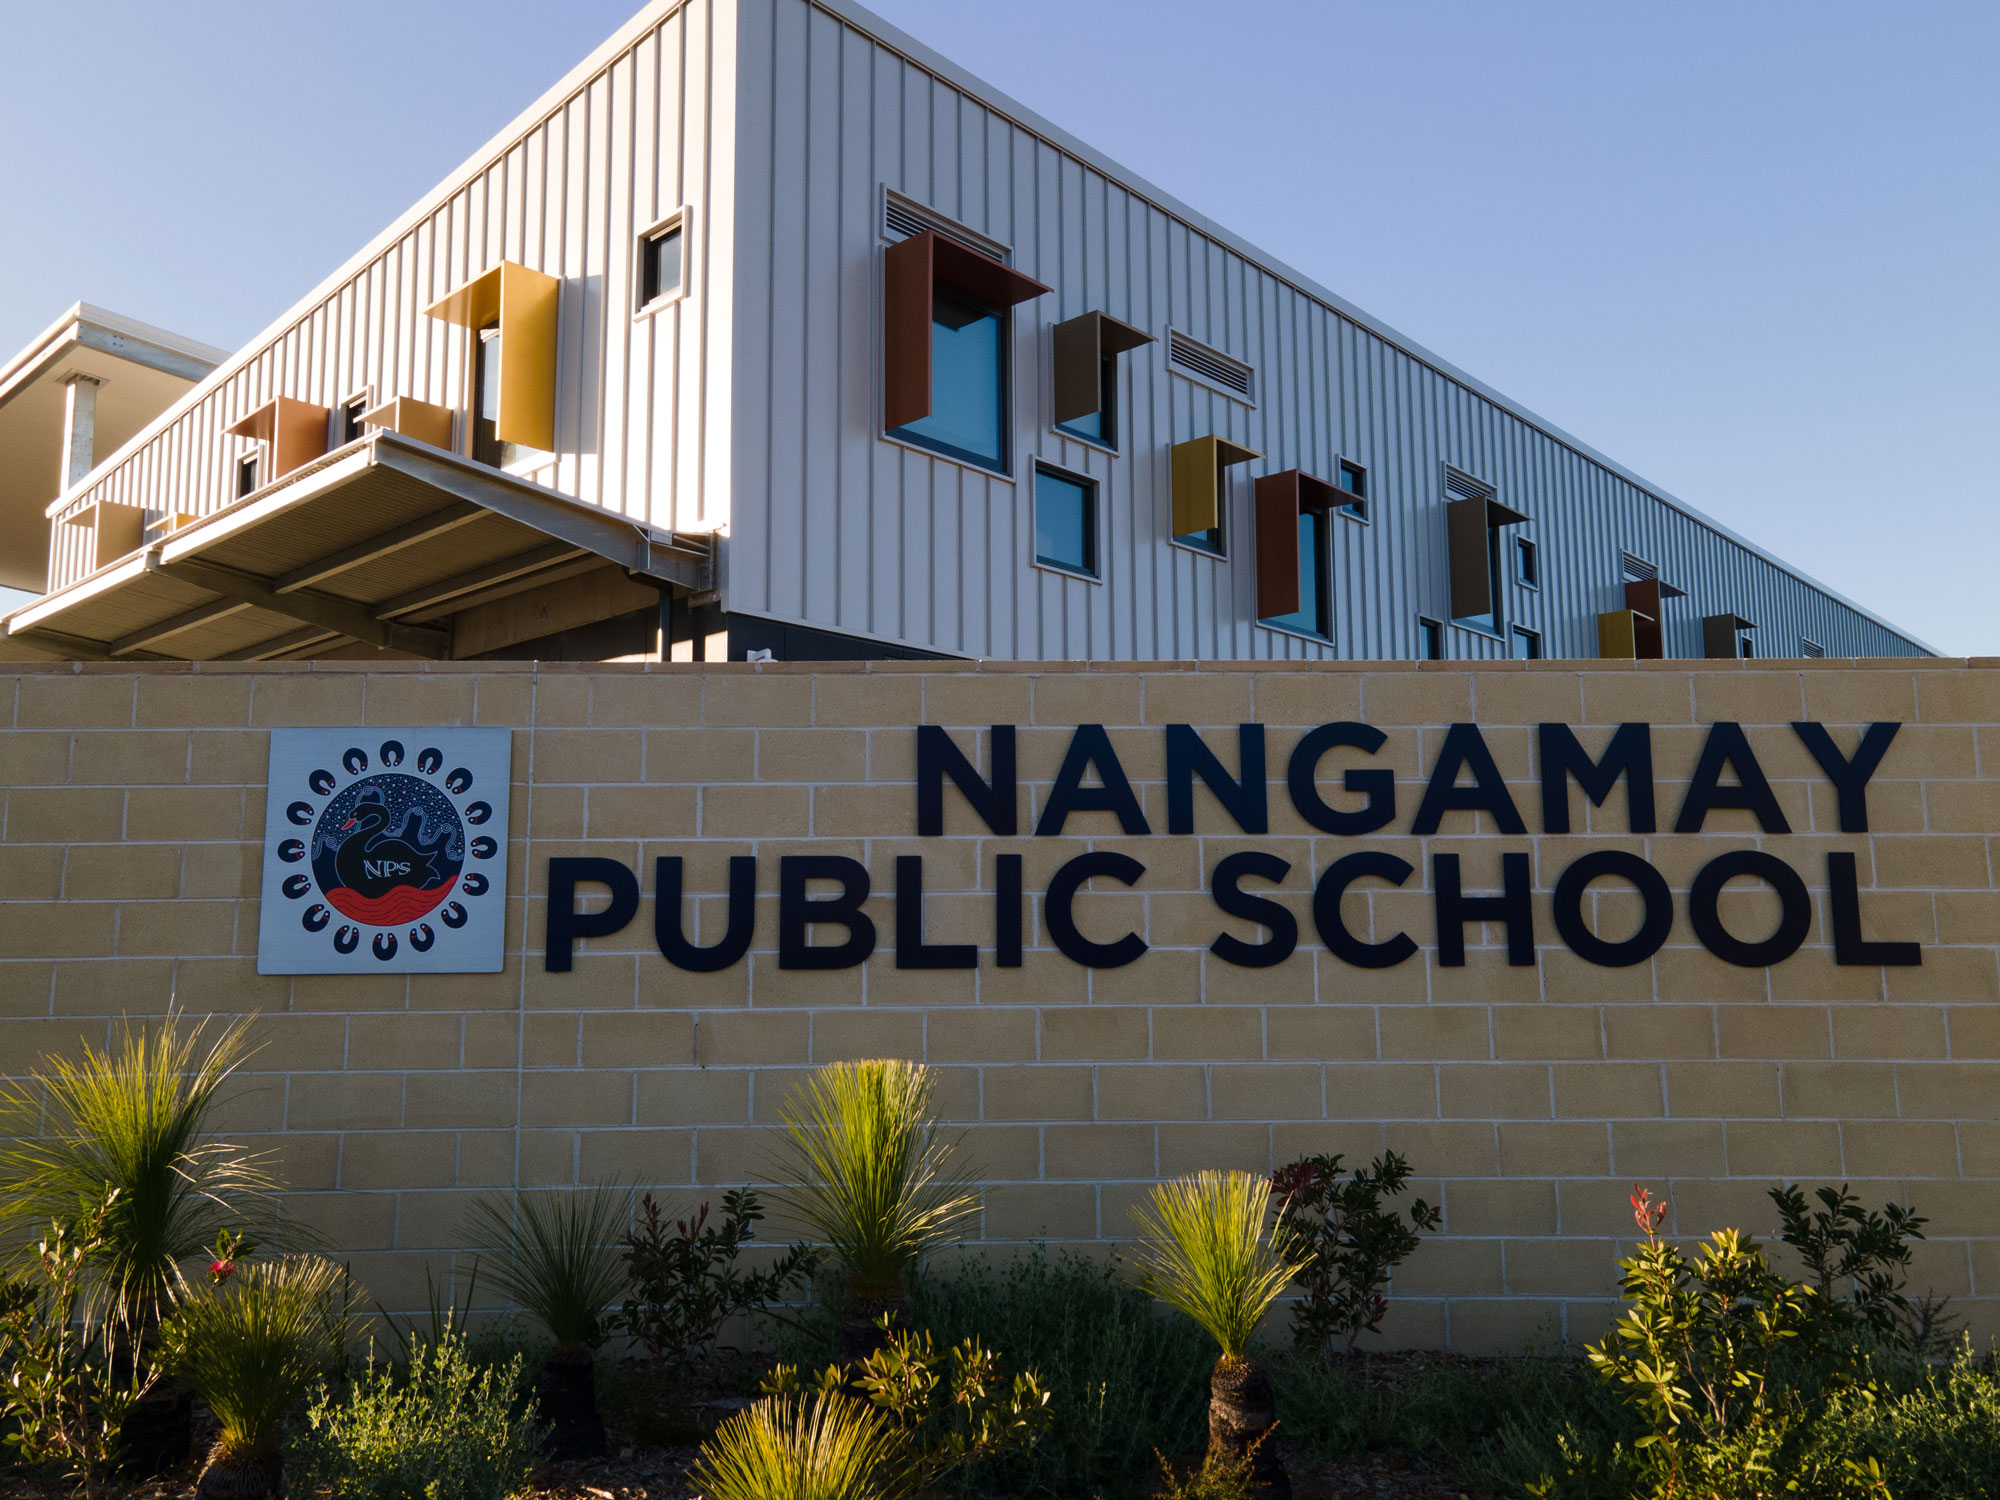 Nangamay Public School